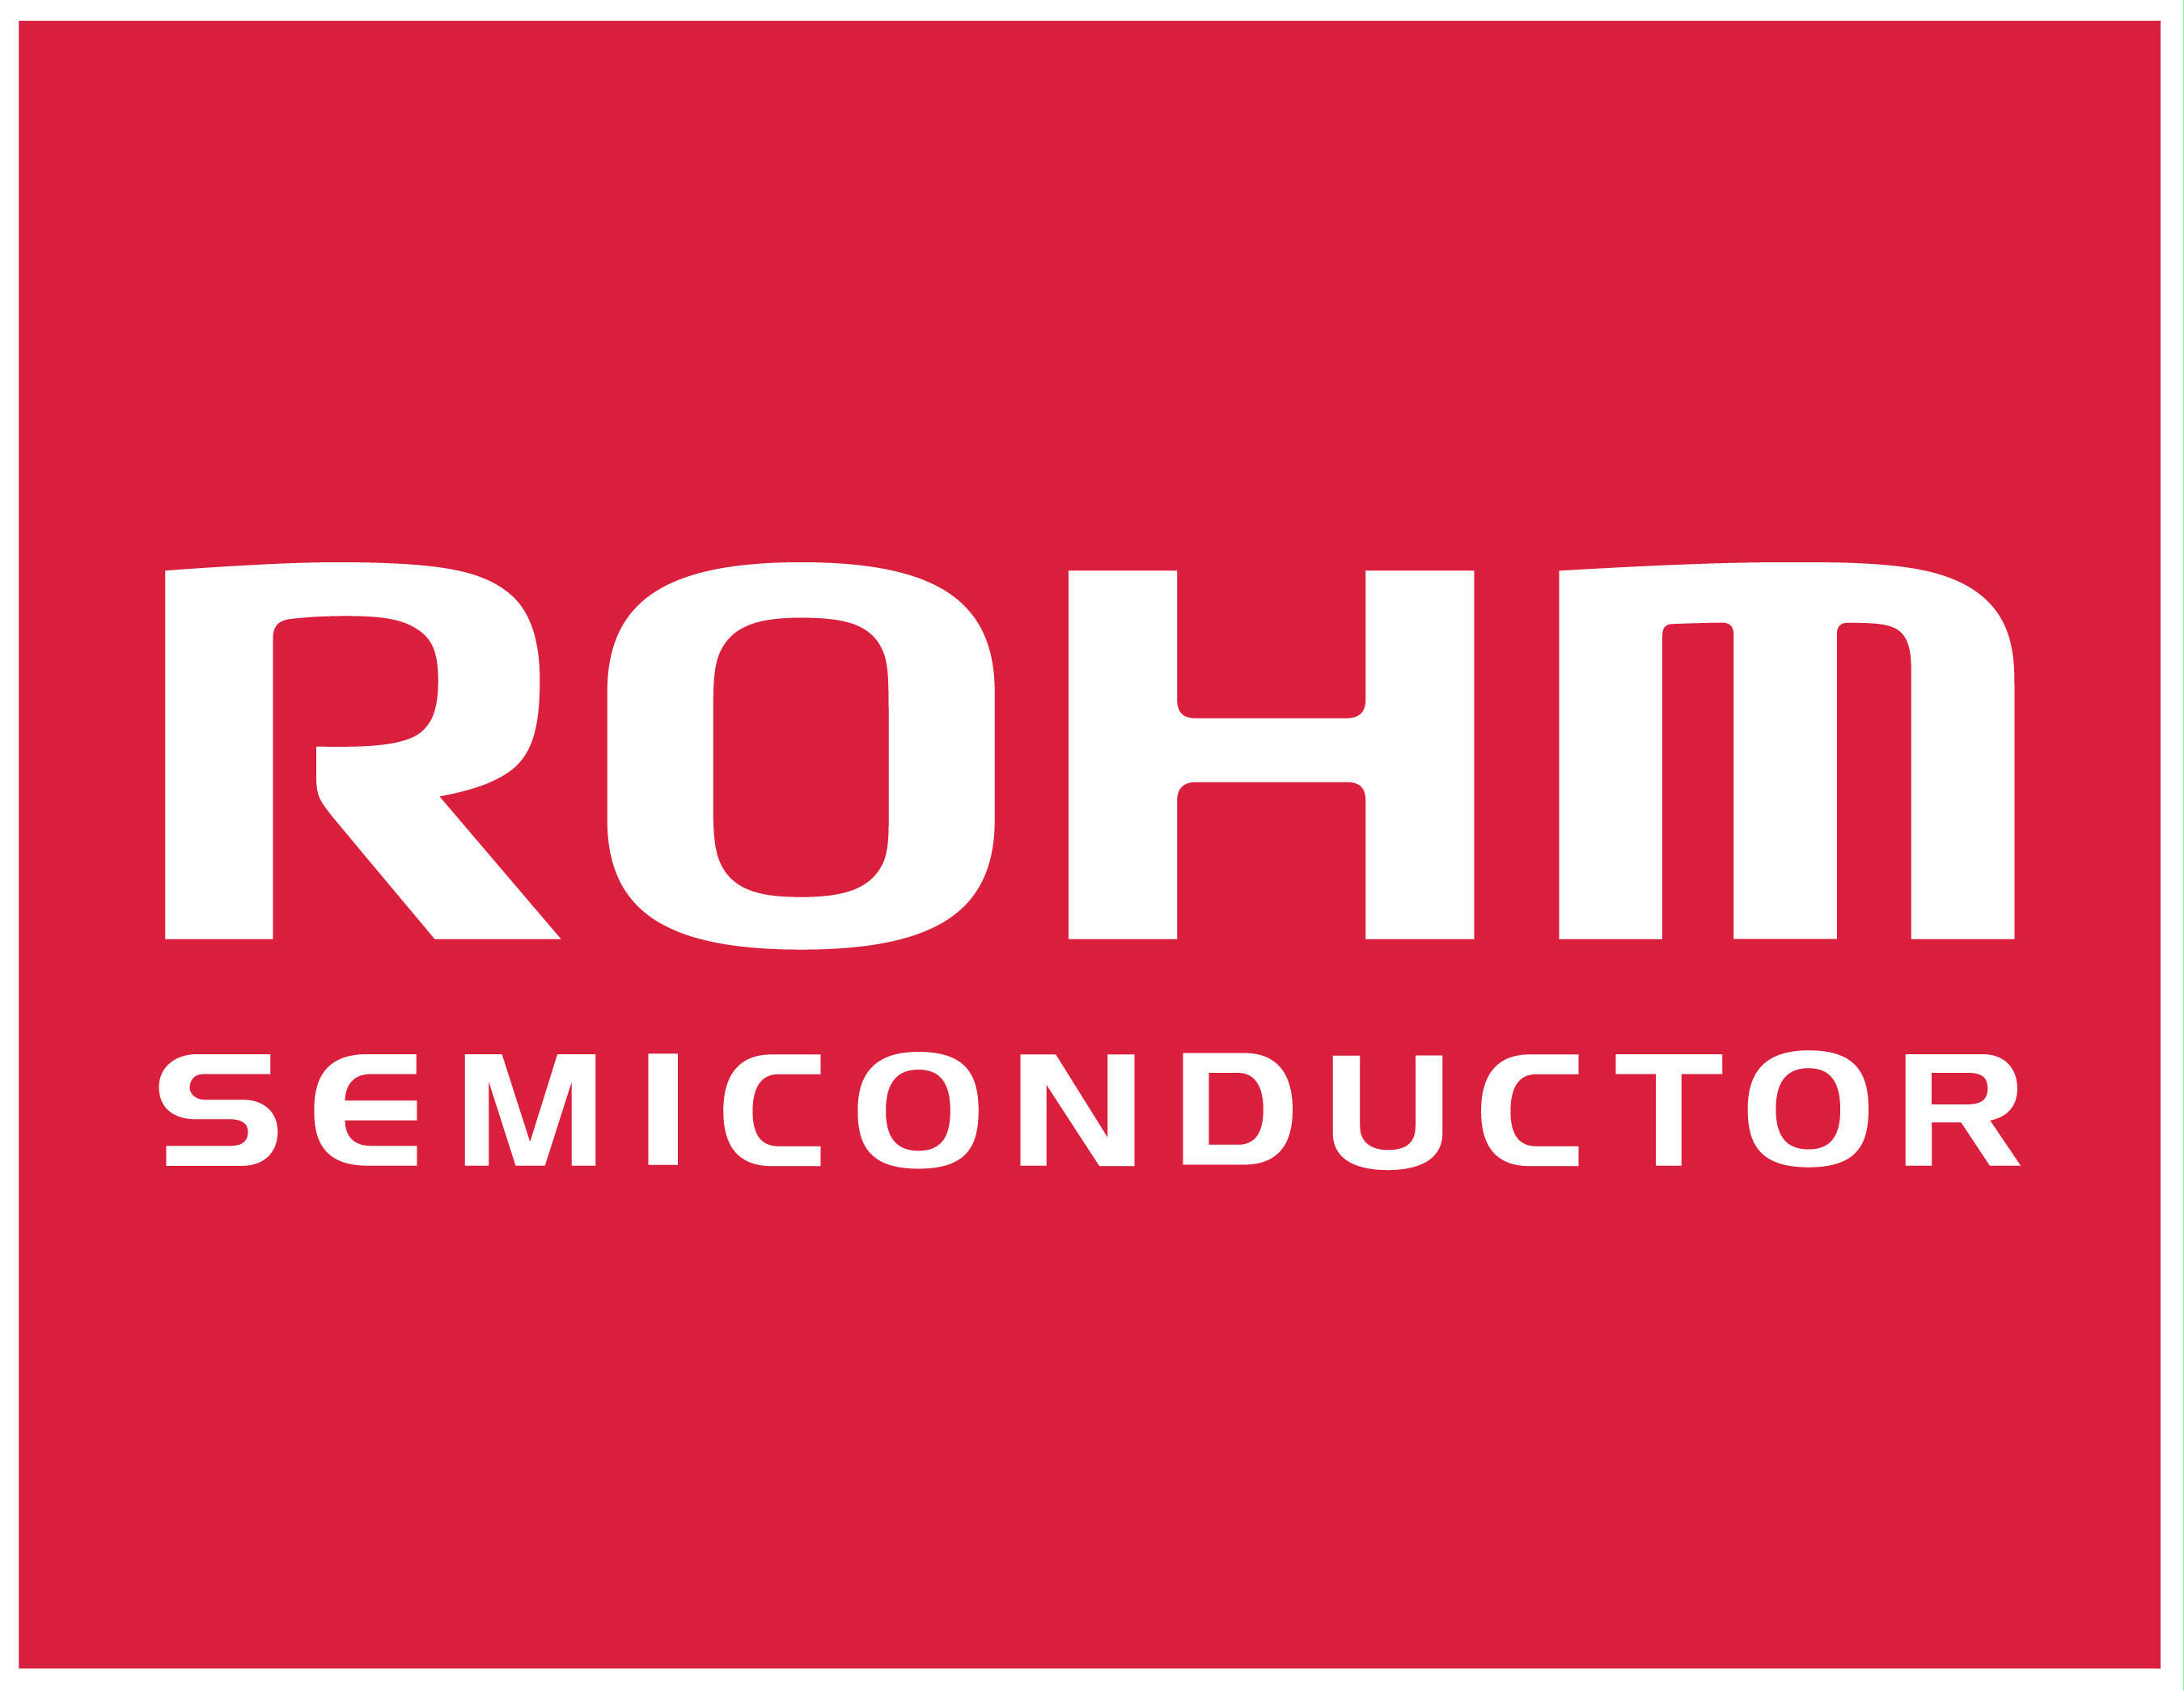 ROHM 推出业界首款单片超级电容器 (EDLC) 电池...